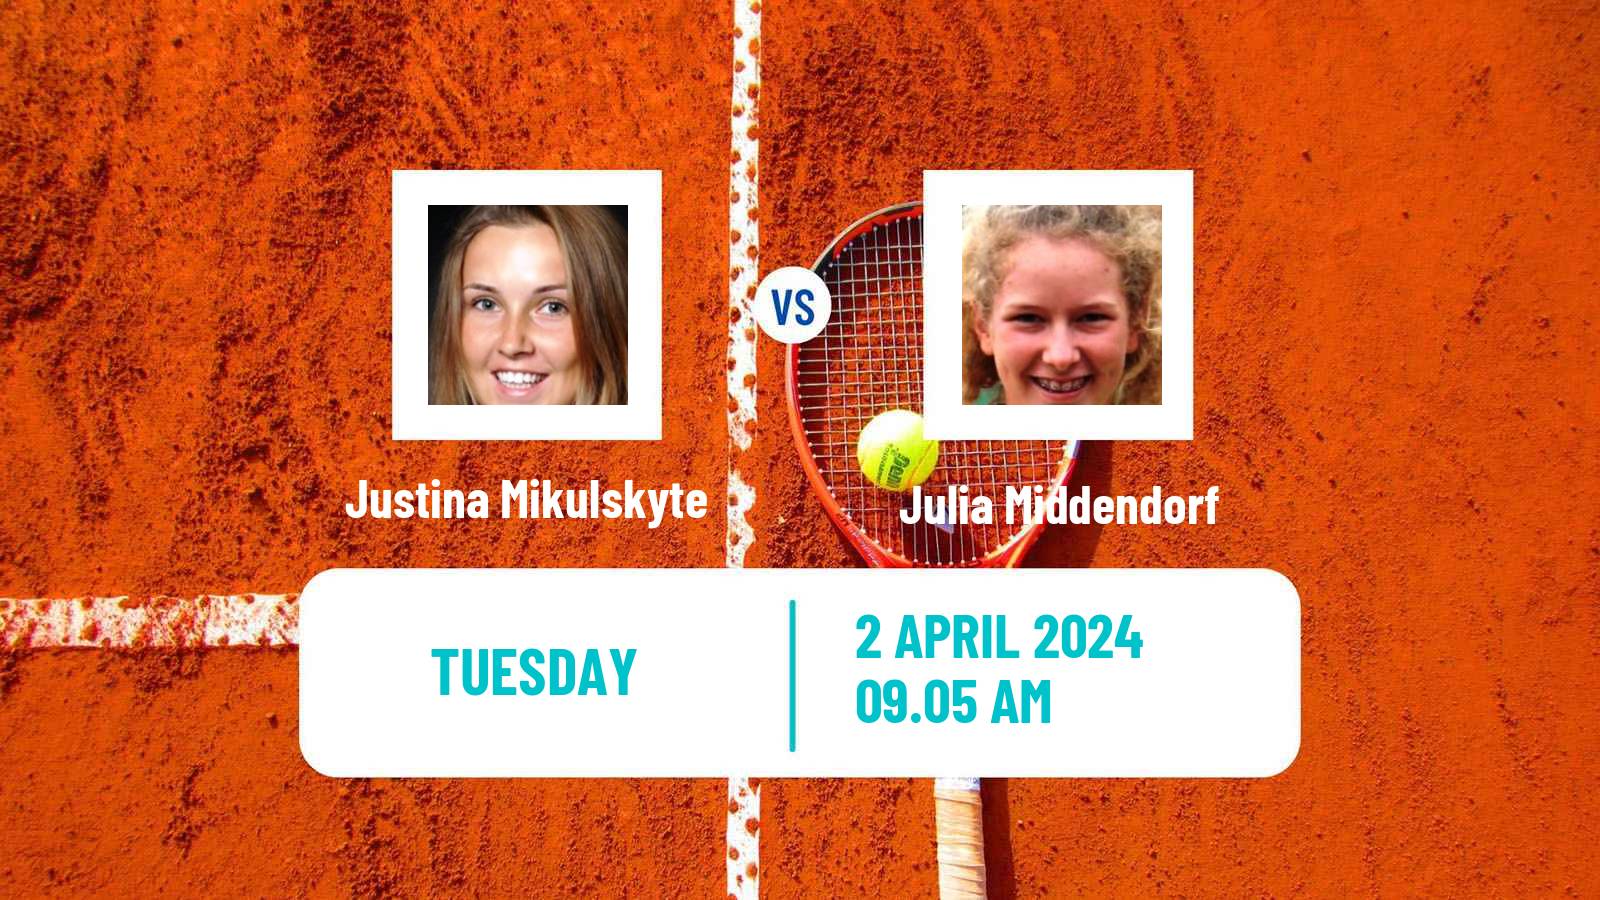 Tennis ITF W75 Split Women Justina Mikulskyte - Julia Middendorf